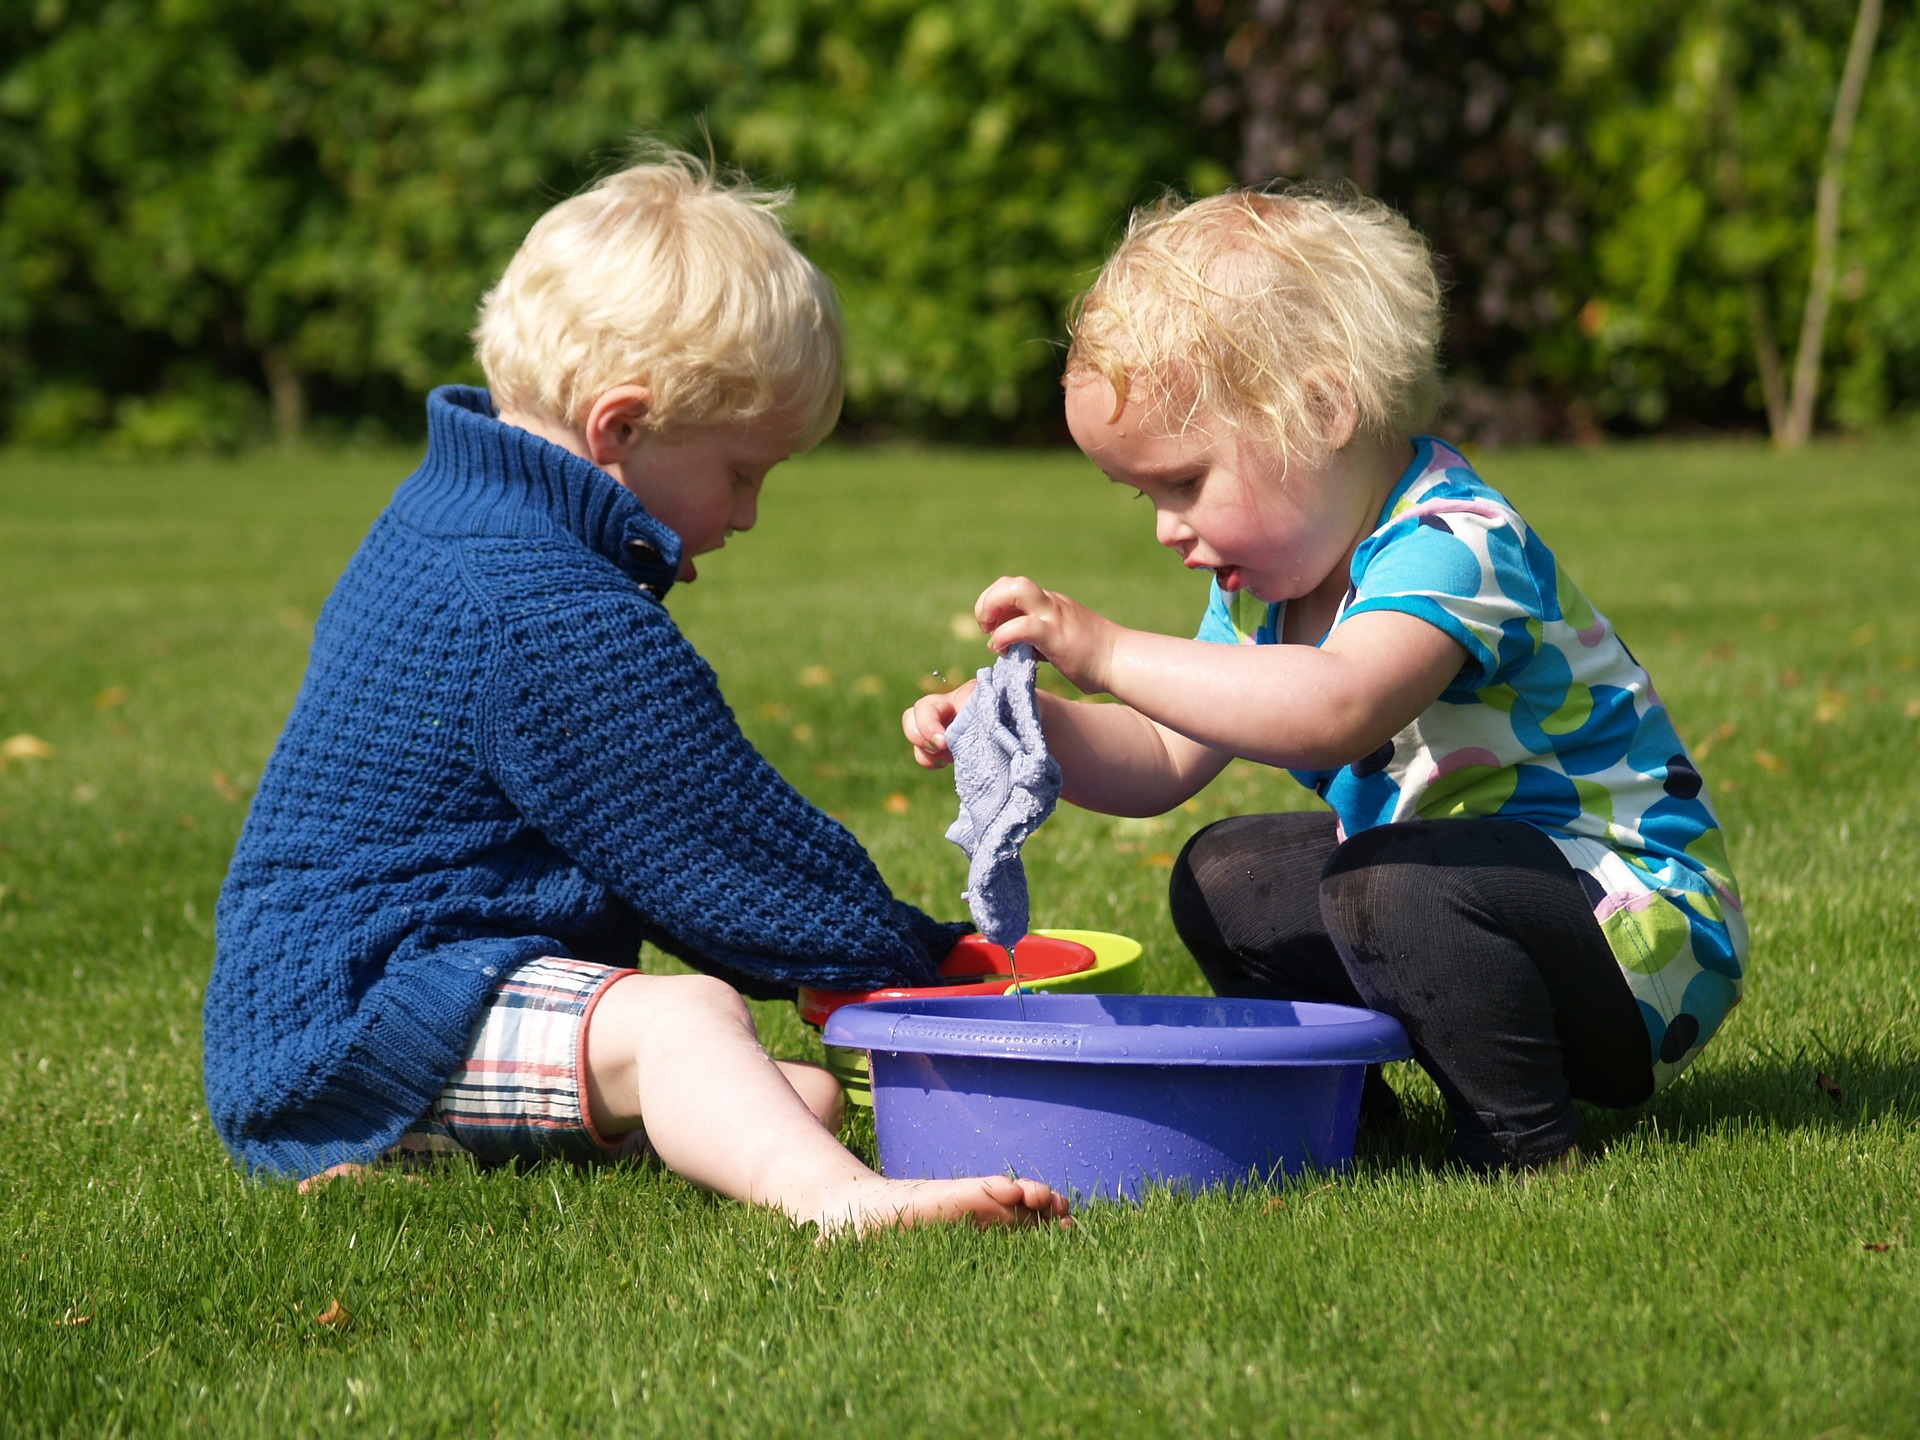 Children playing in garden